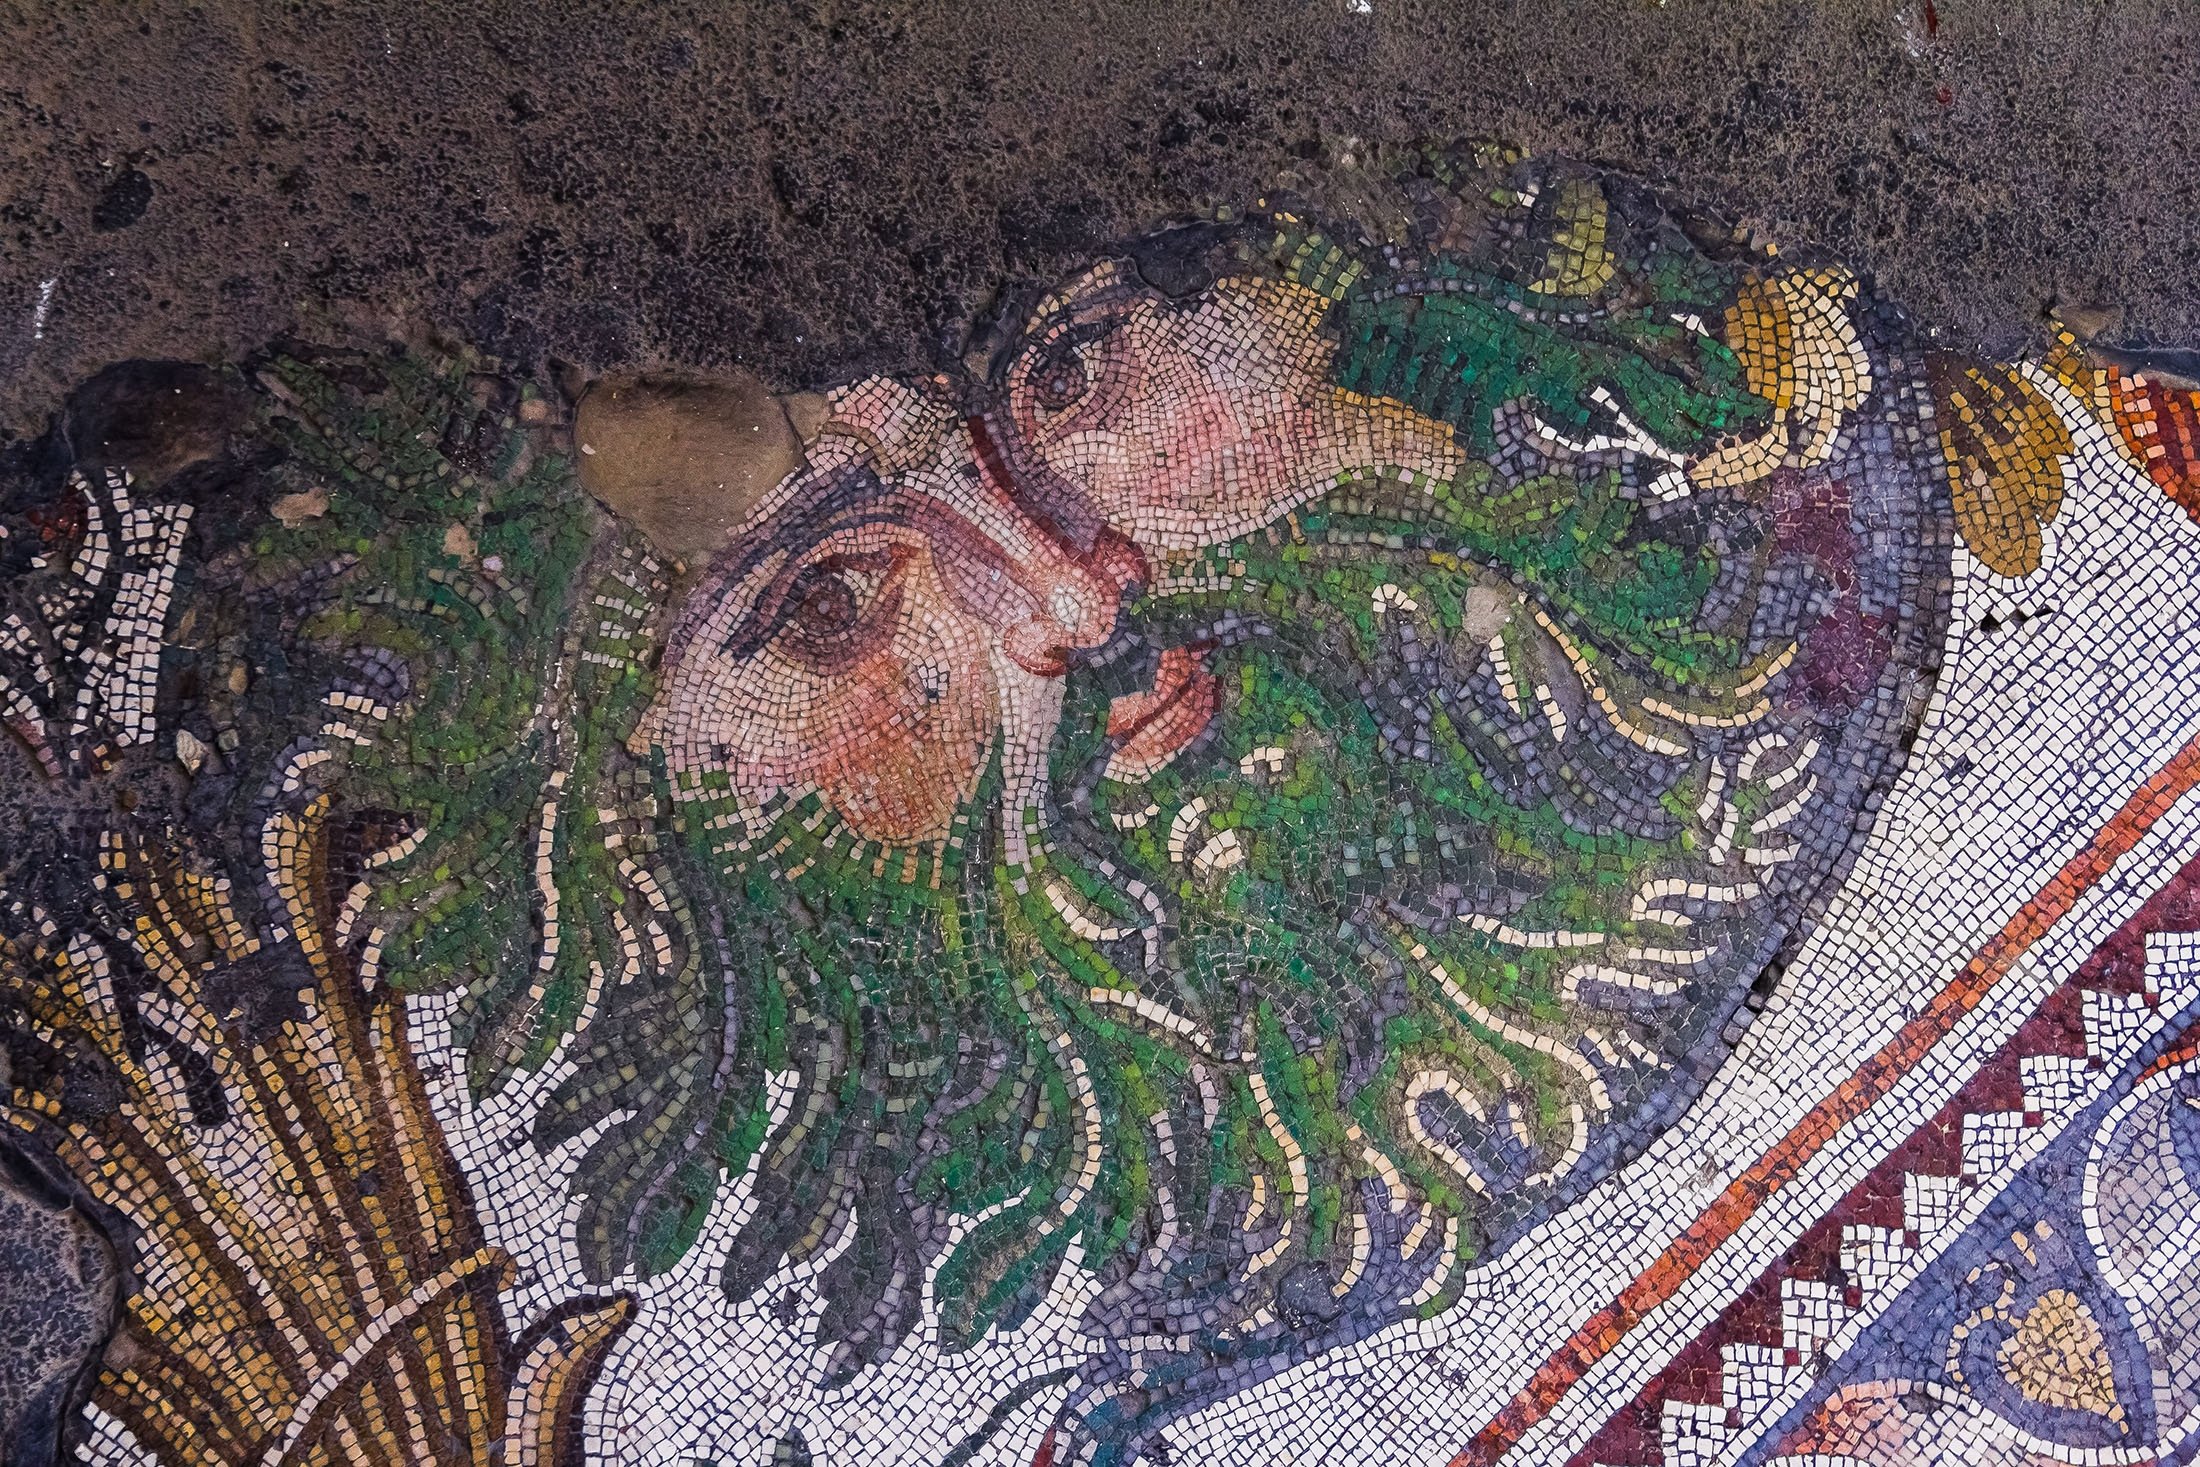 Mosaik kuno dari periode Bizantium di Museum Mosaik Istana Agung, di Istanbul, Turki, 30 April 2013. (Foto Shutterstock)